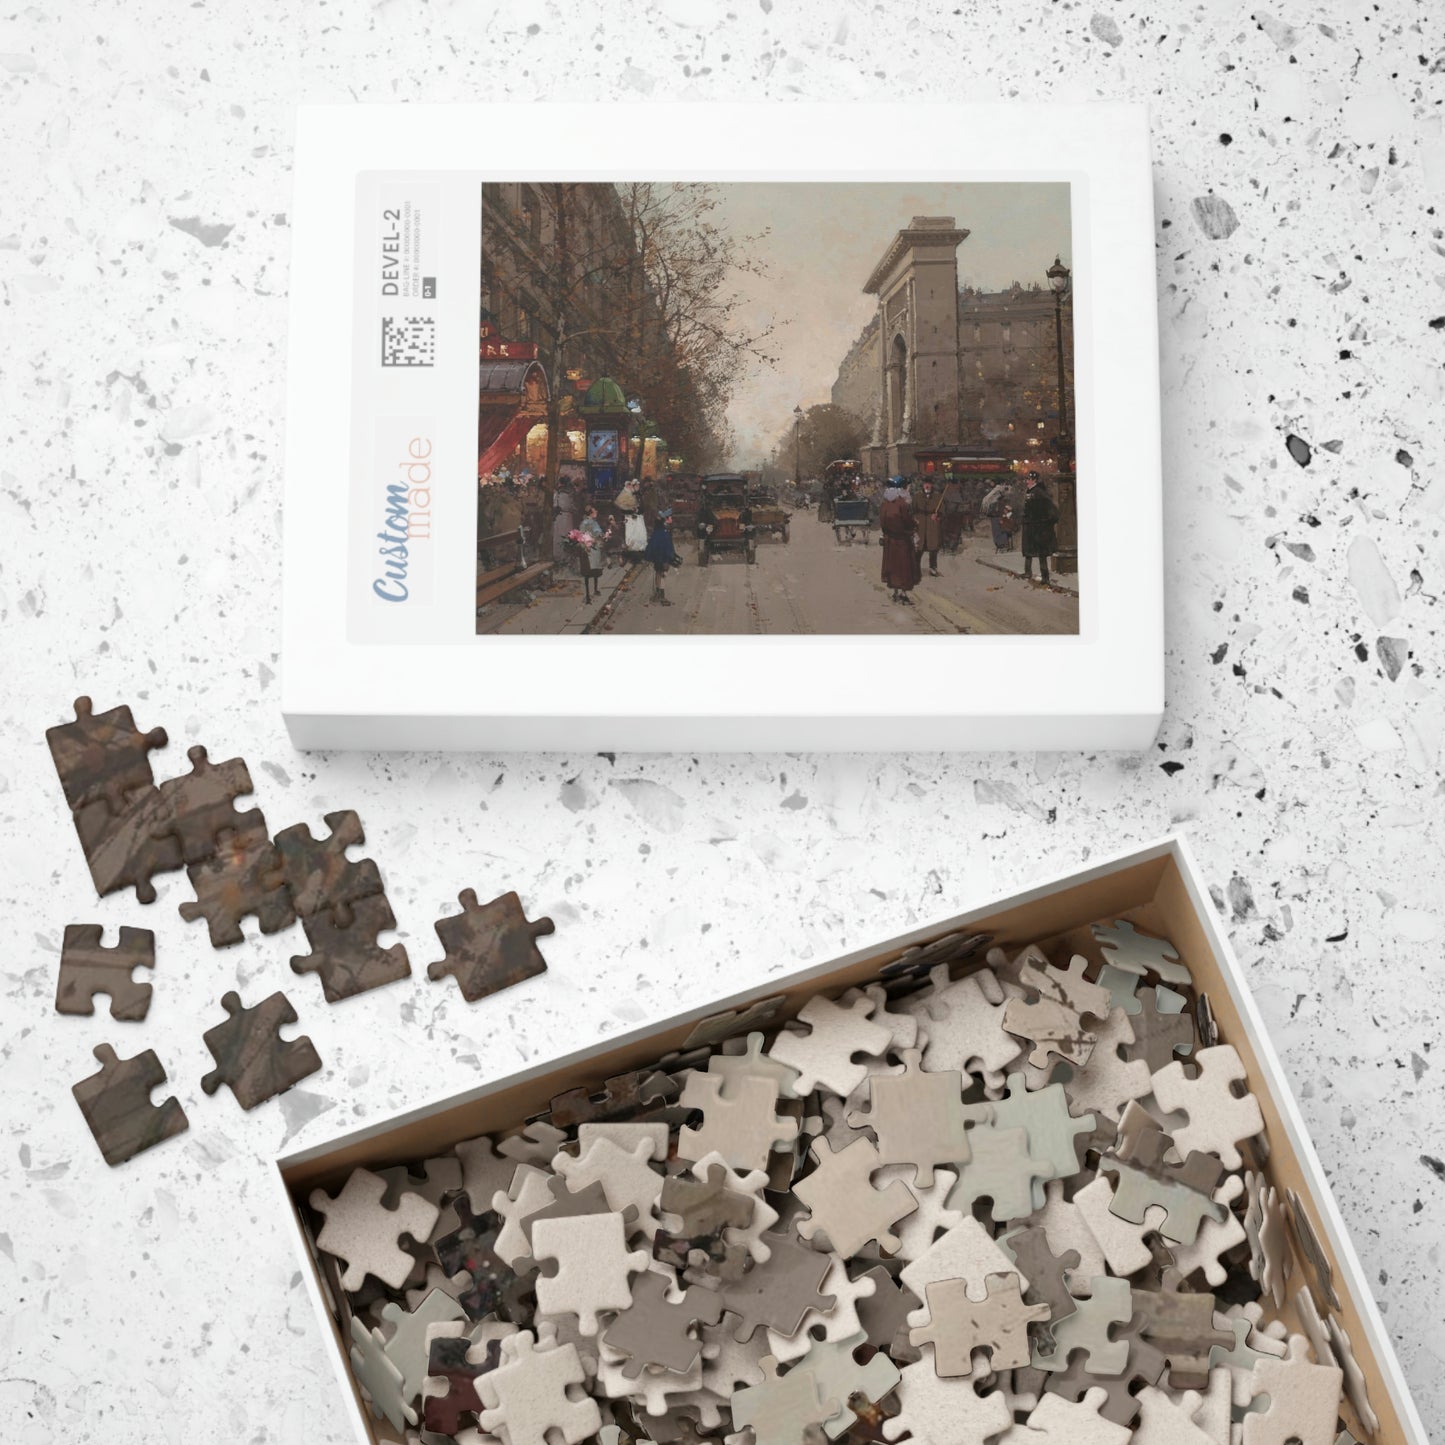 Puzzle - Eugene Galien-Laloue's Porte St. Denis